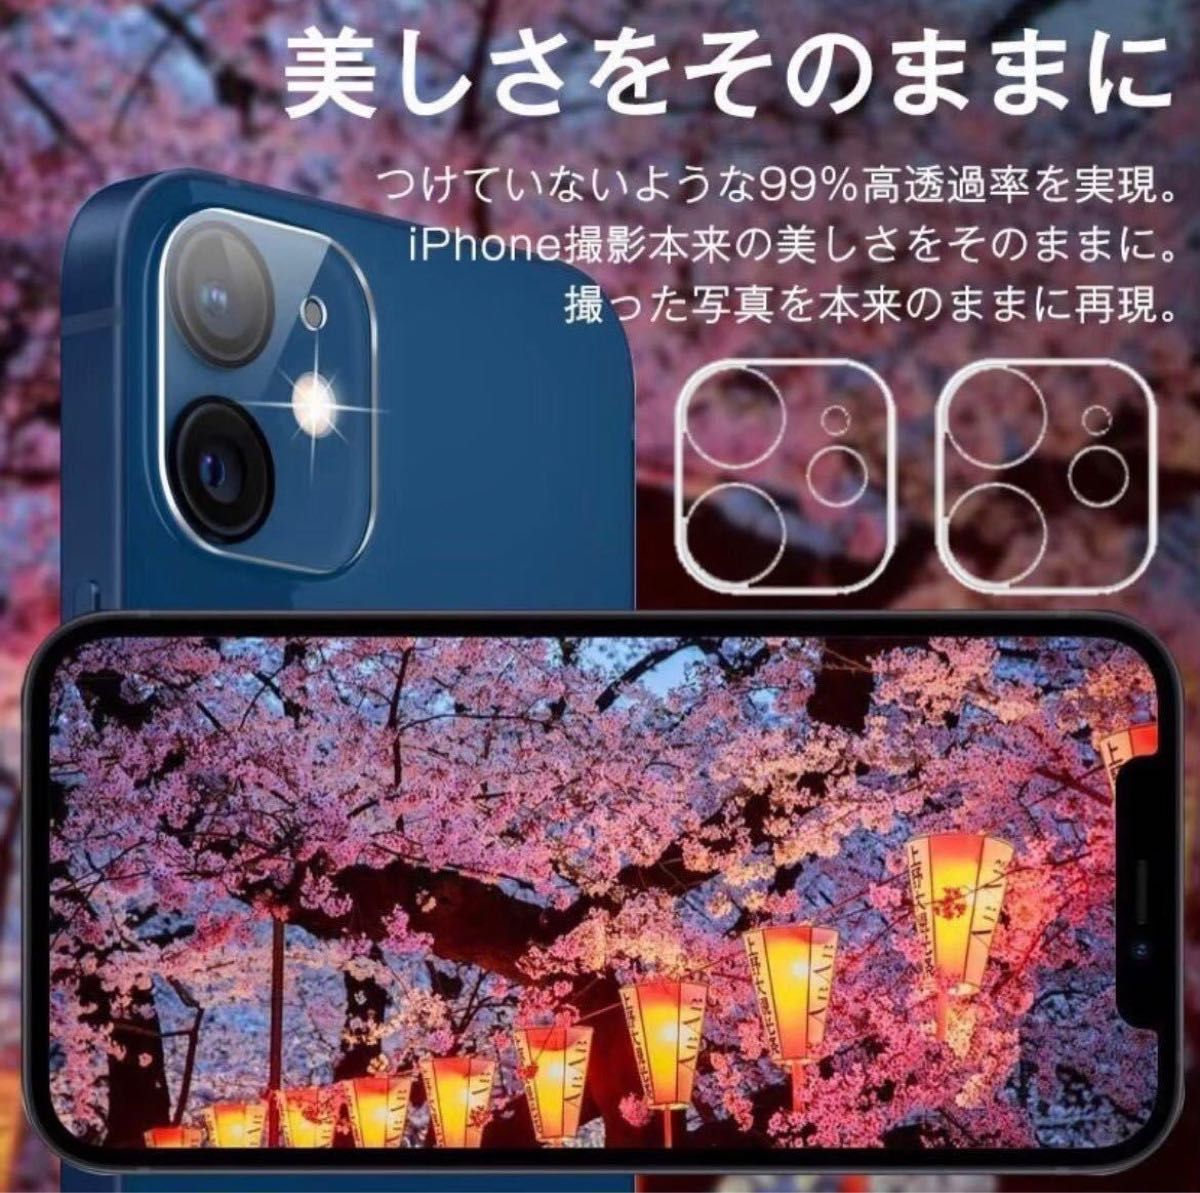 【iPhone12】ブルーライト大幅カット高品質液晶ガラスフィルム+iPhoneカメラレンズ保護カバー 各1枚セット